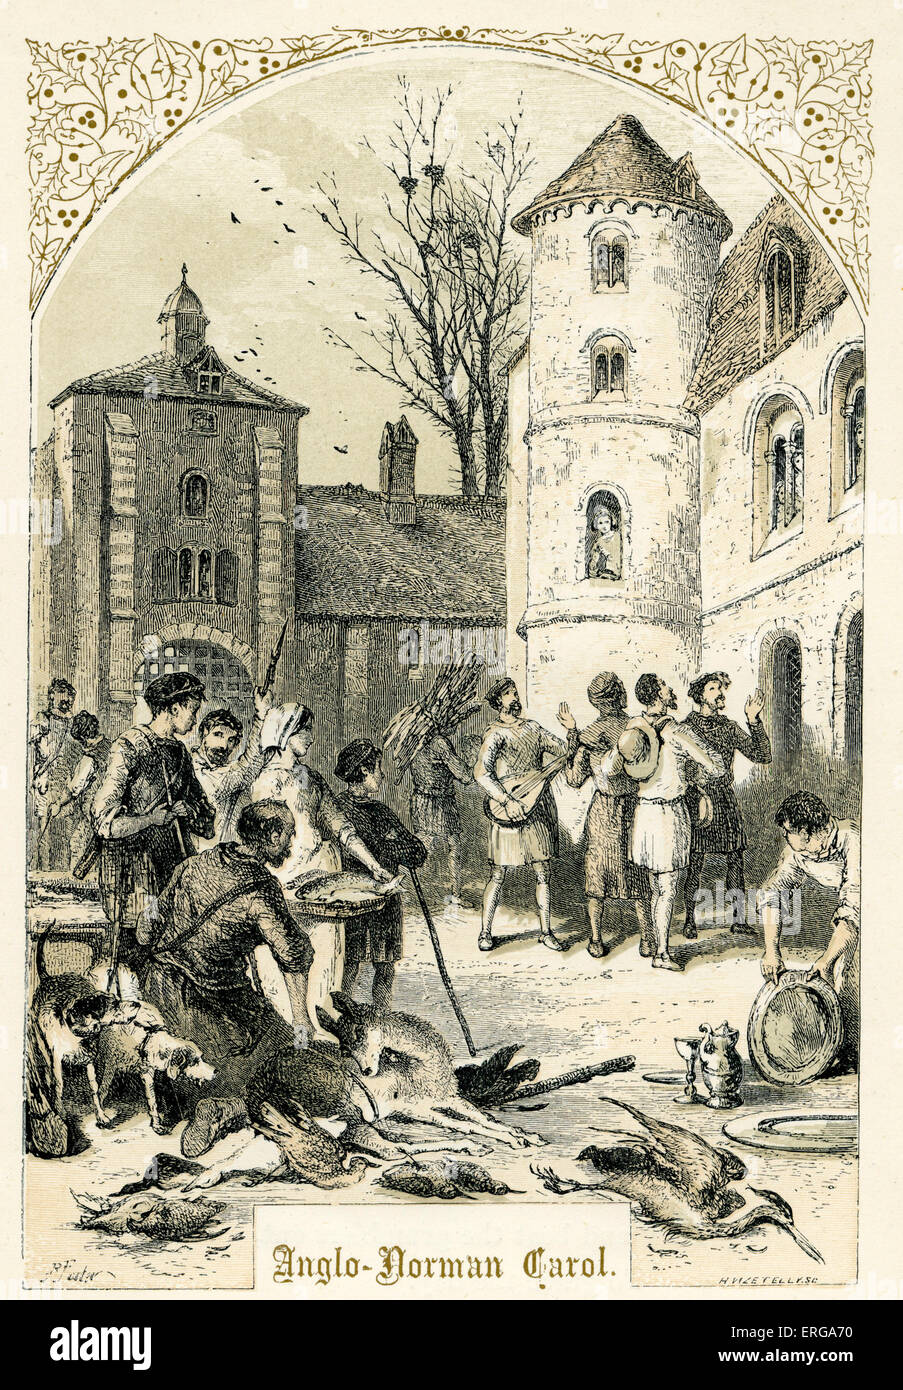 Anglo-Normal Carol - Illustration von Birket Foster, 1872.  Musiker, die auf der Suche nach Weihnachten reisen. Stockfoto